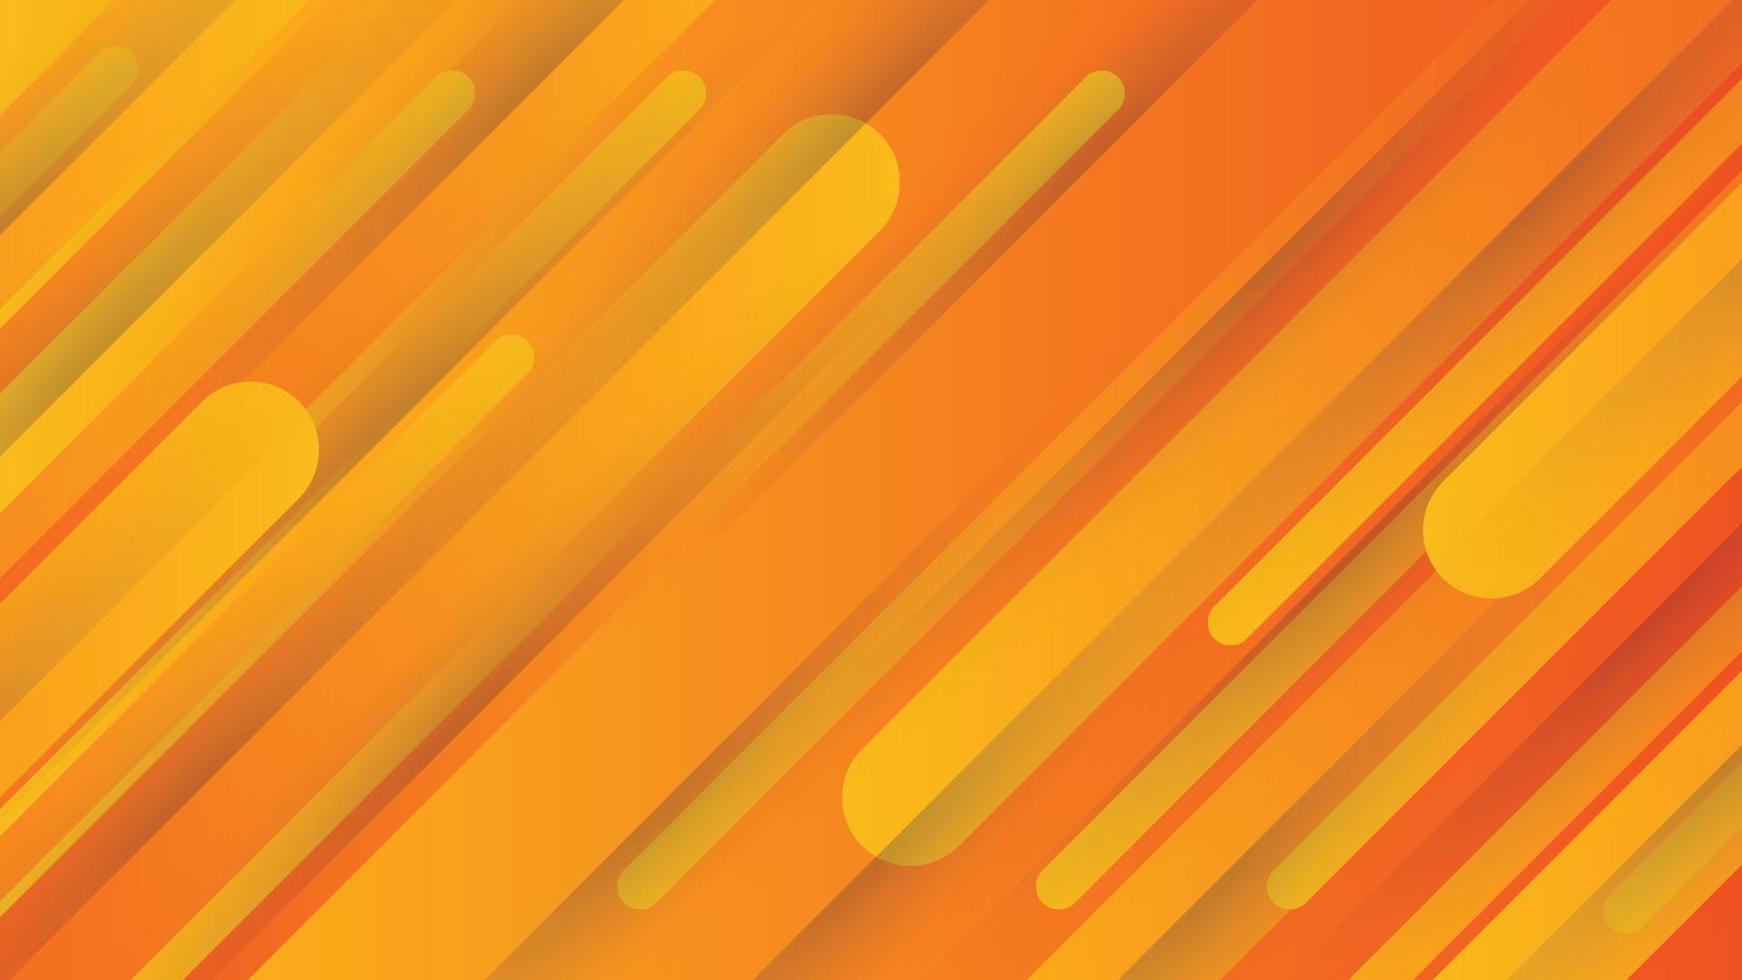 fundo abstrato moderno com elementos de memphis em gradientes de amarelo e laranja. com design gráfico geométrico moderno. vetor